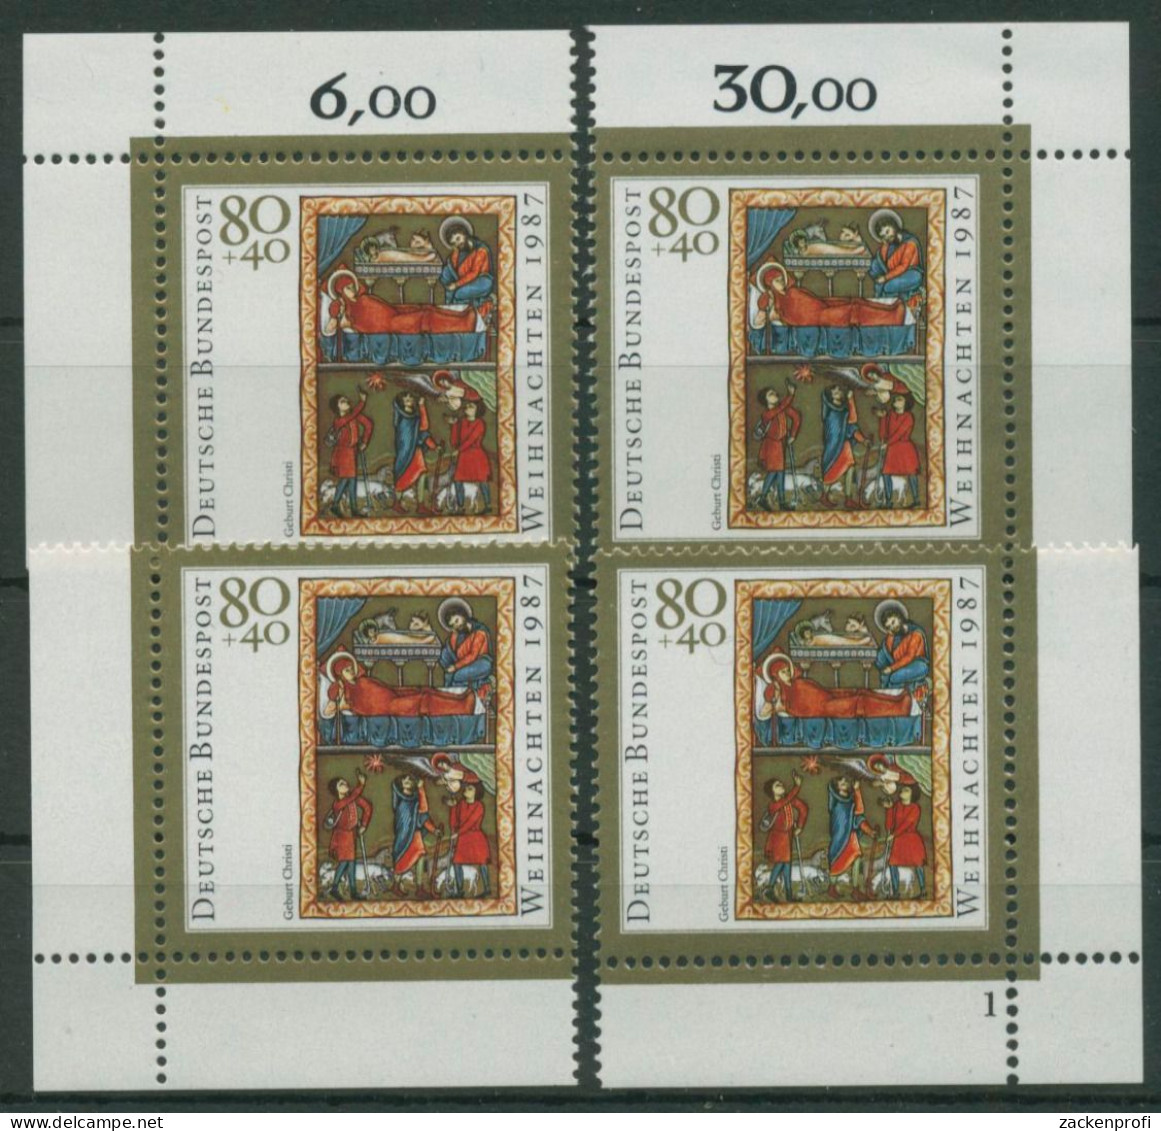 Bund 1987 Weihnachten Miniatur 1346 Alle 4 Ecken Postfrisch (E1623) - Neufs